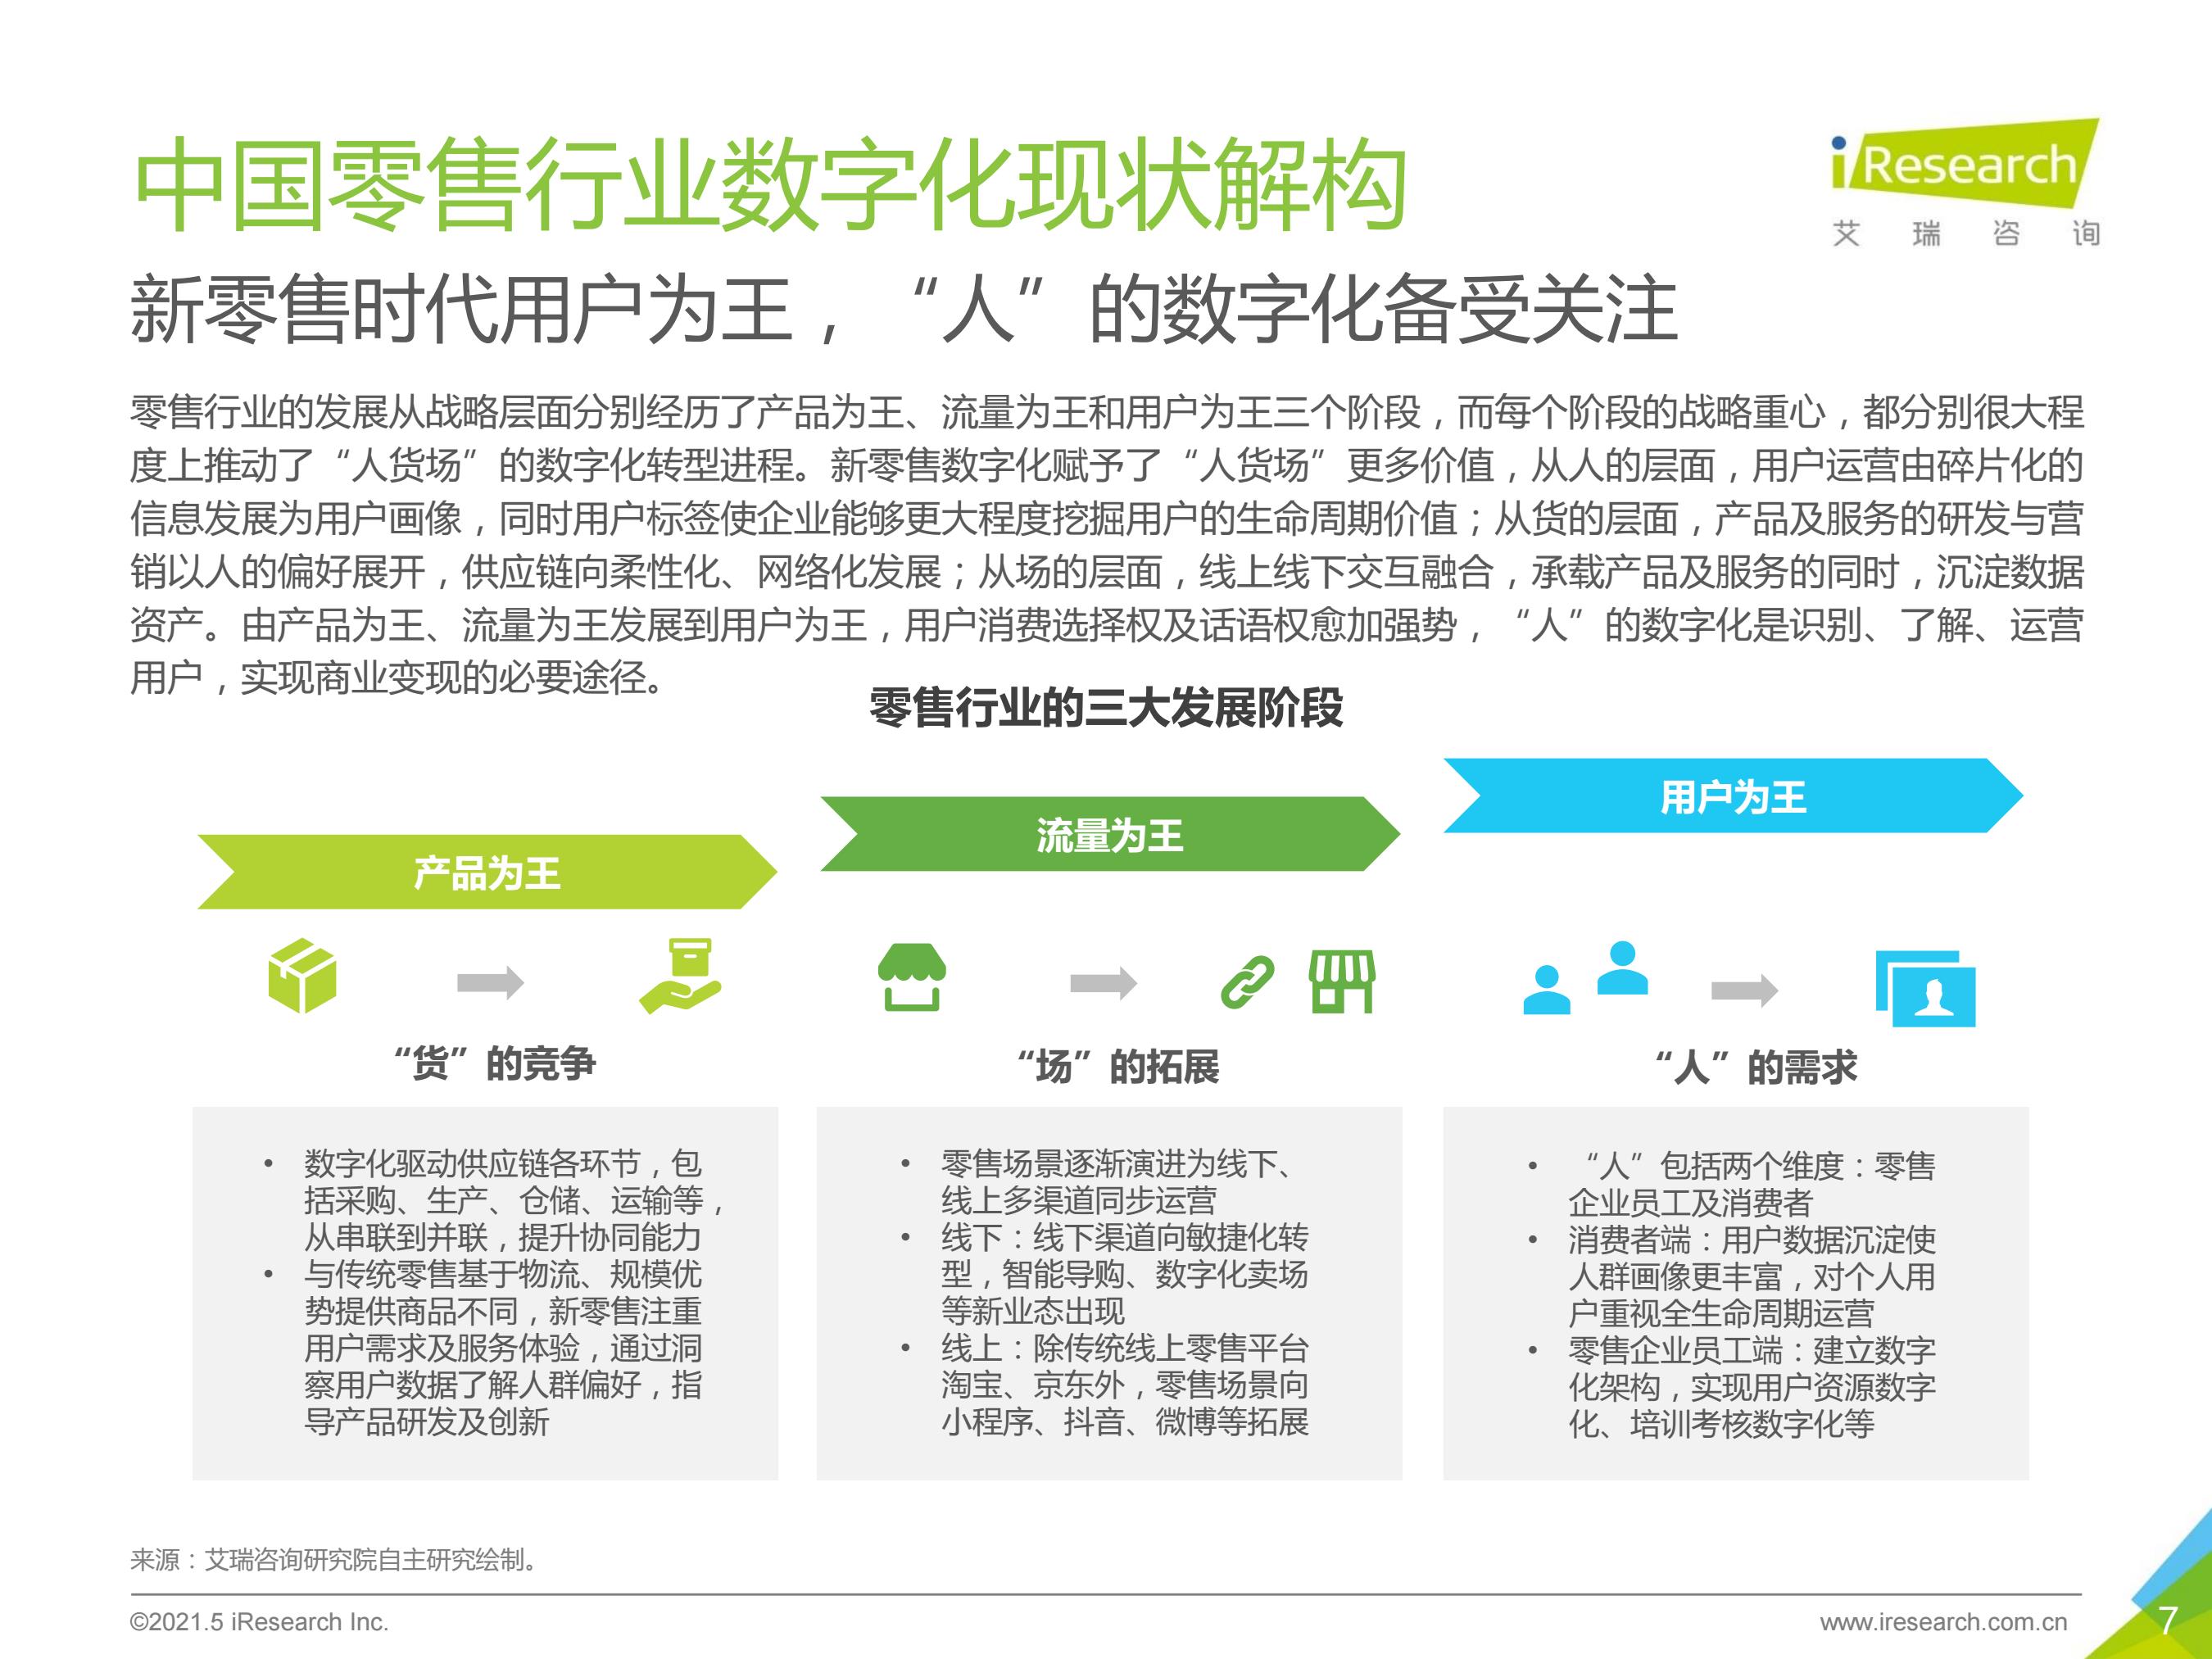 2021年中国零售数字化转型研究报告